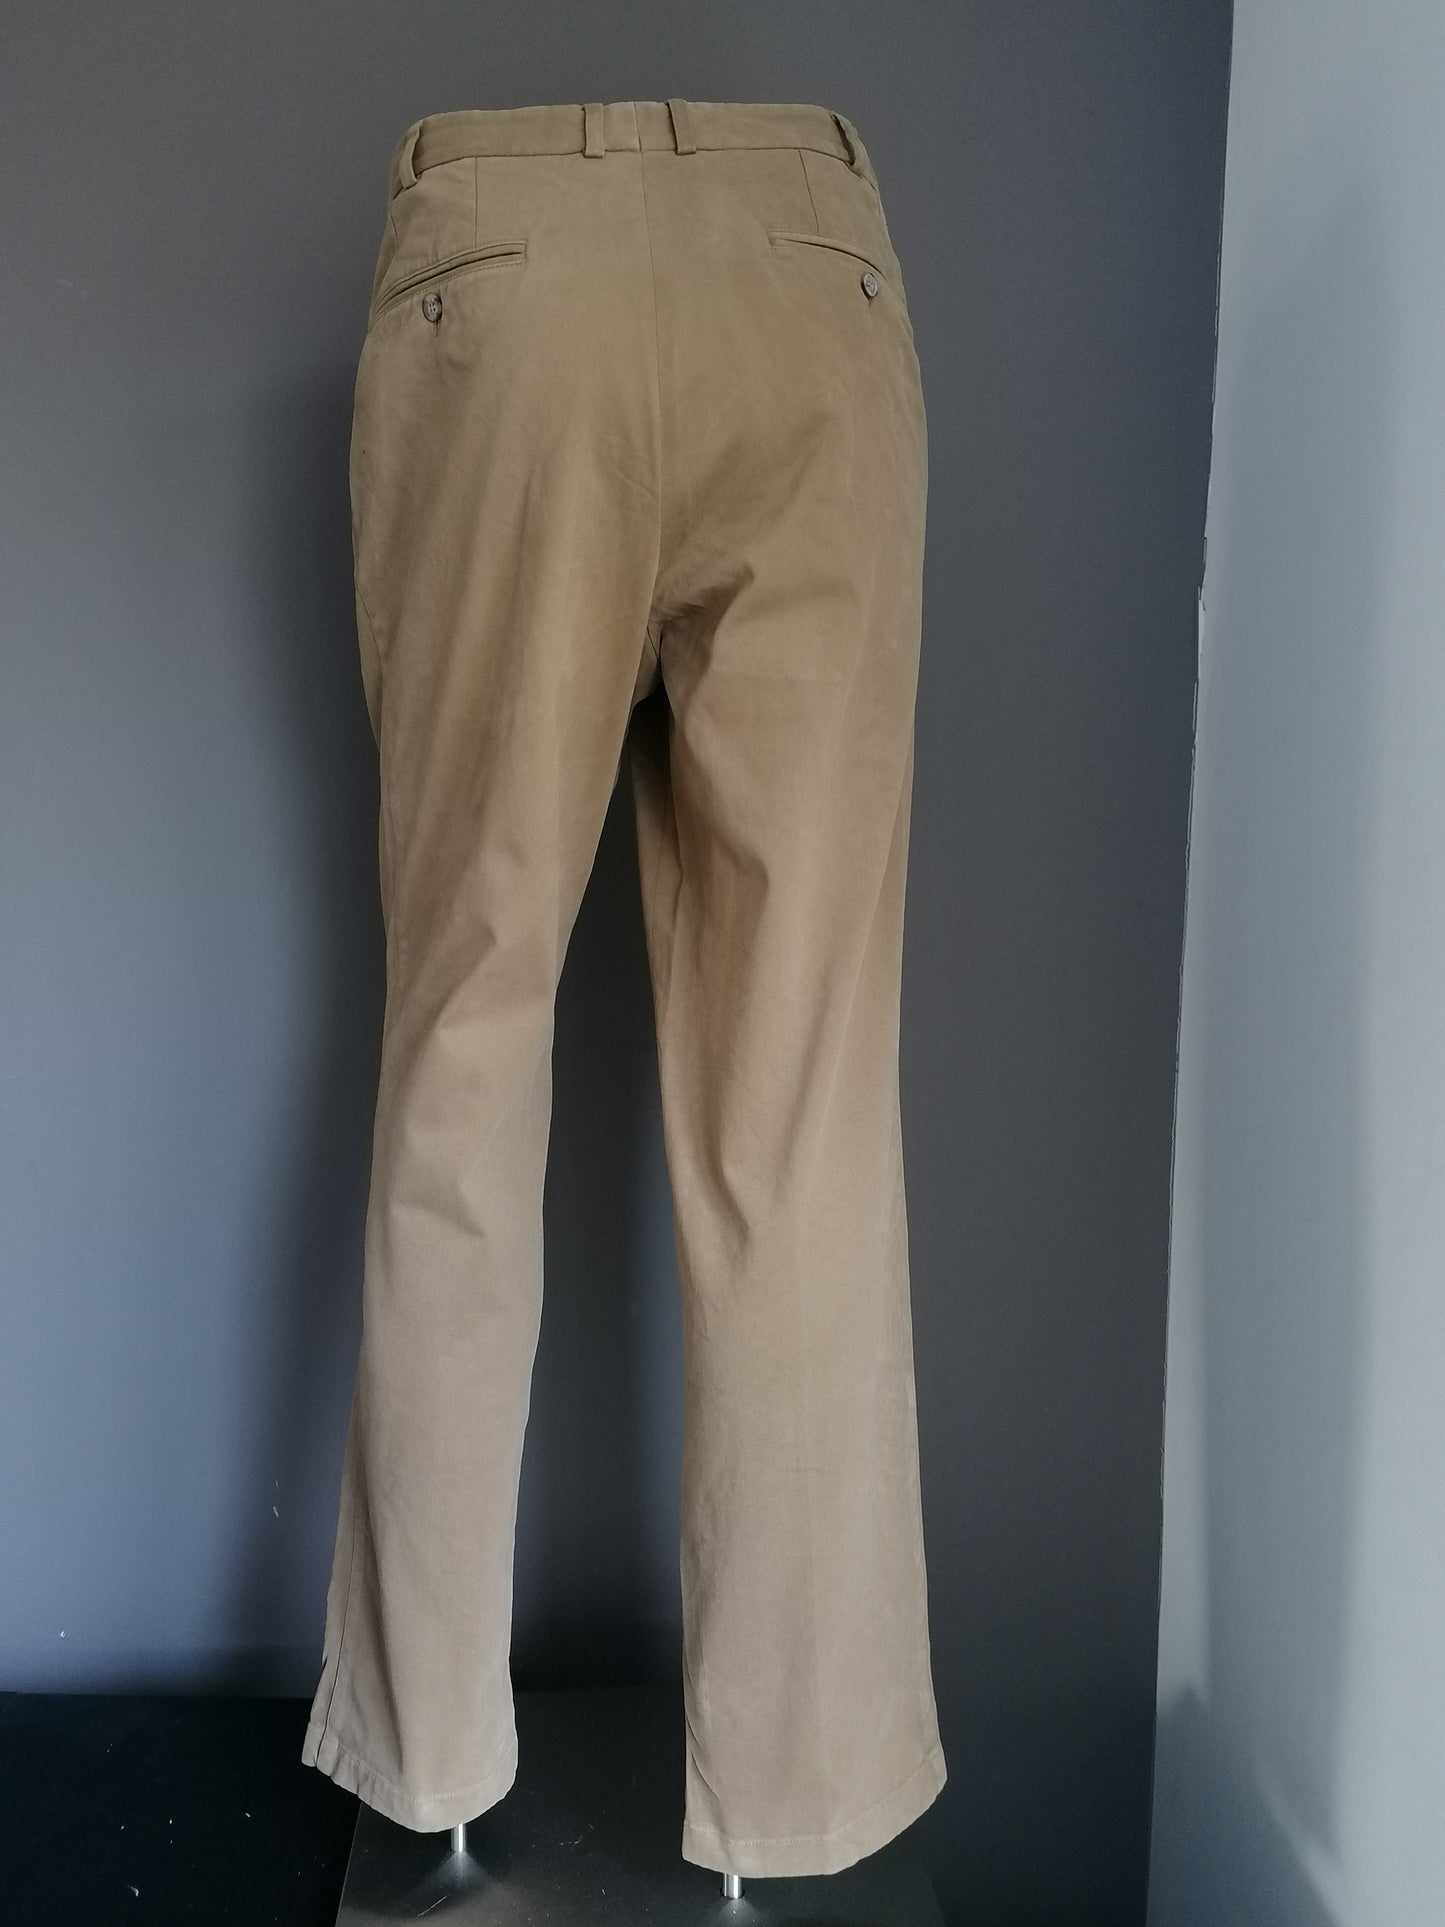 Pantalones Hiltl. Coloreado de color beige. Tamaño 52 / l